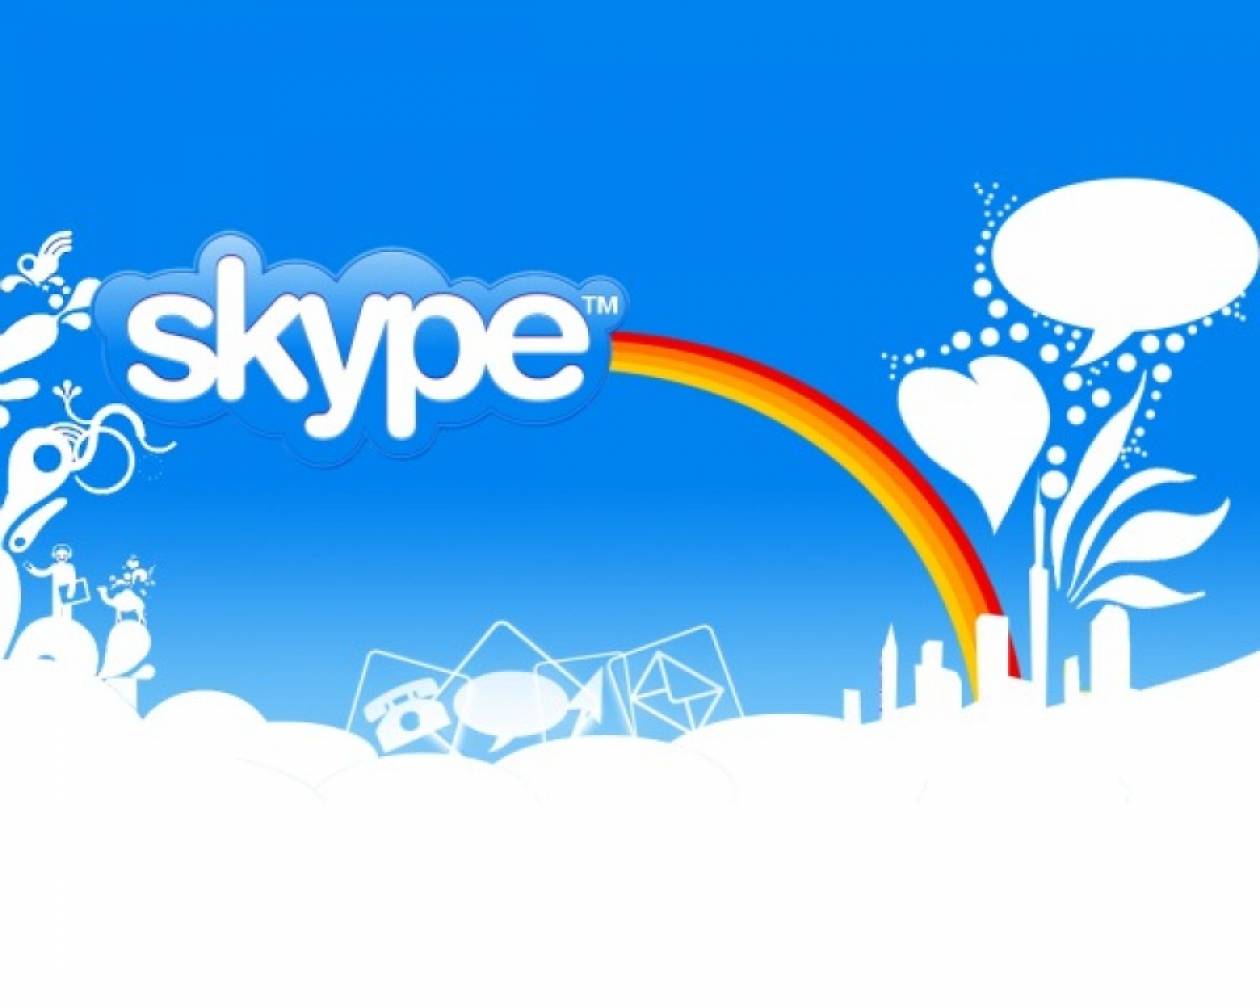 Επίσημα διαθέσιμο το Skype για iPad